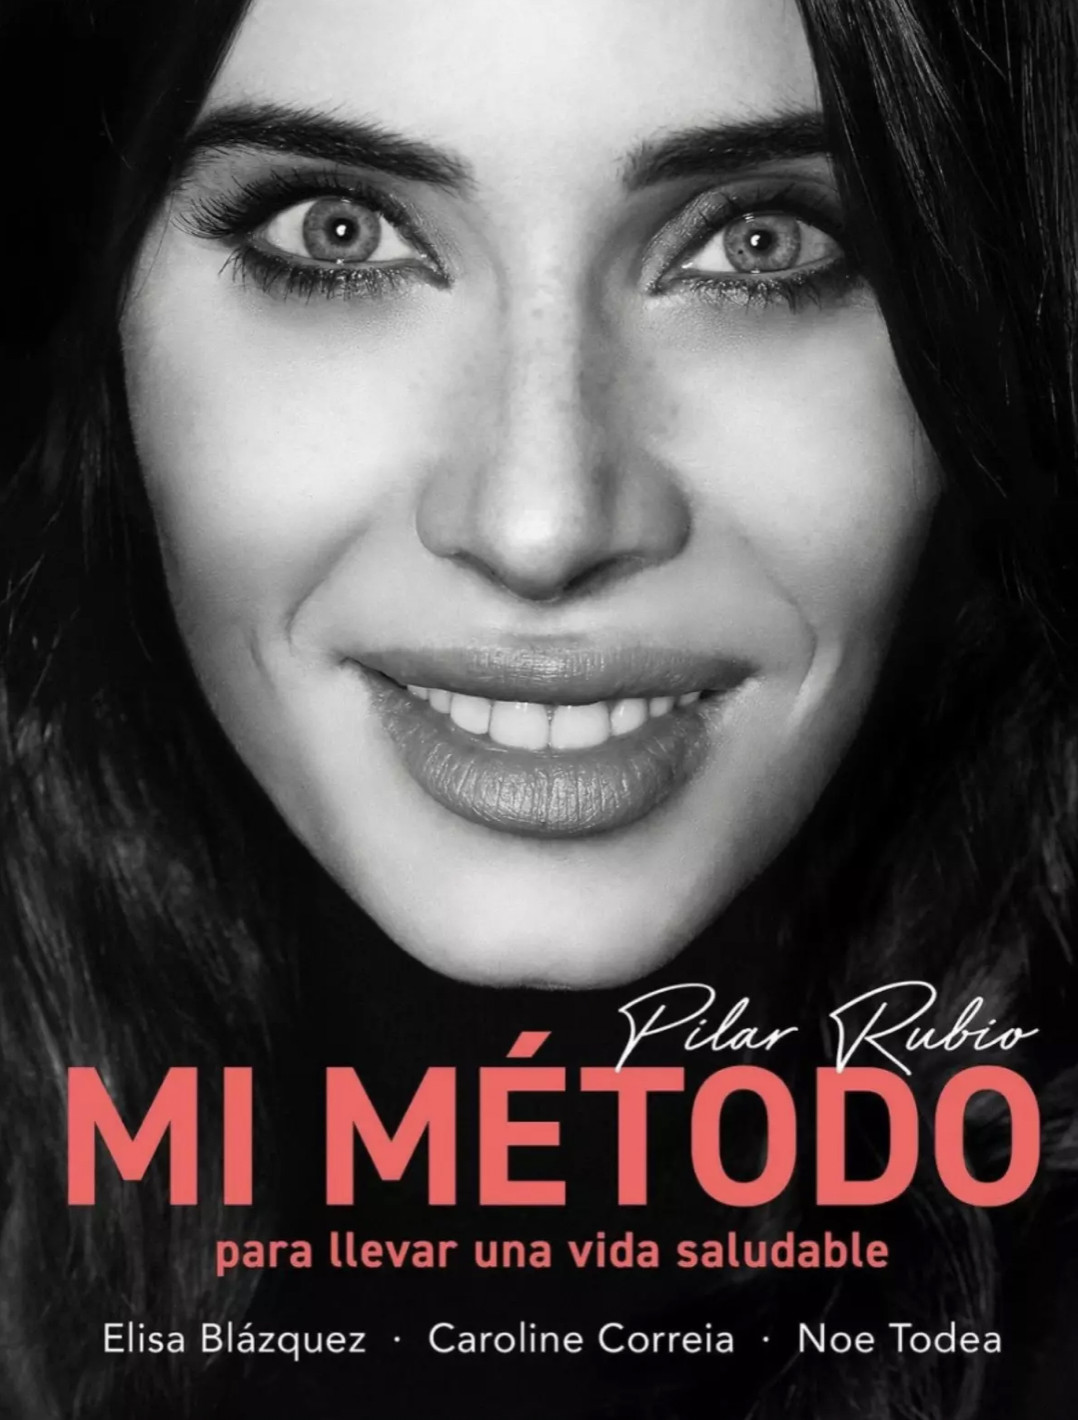 Pilar Rubio Mi método